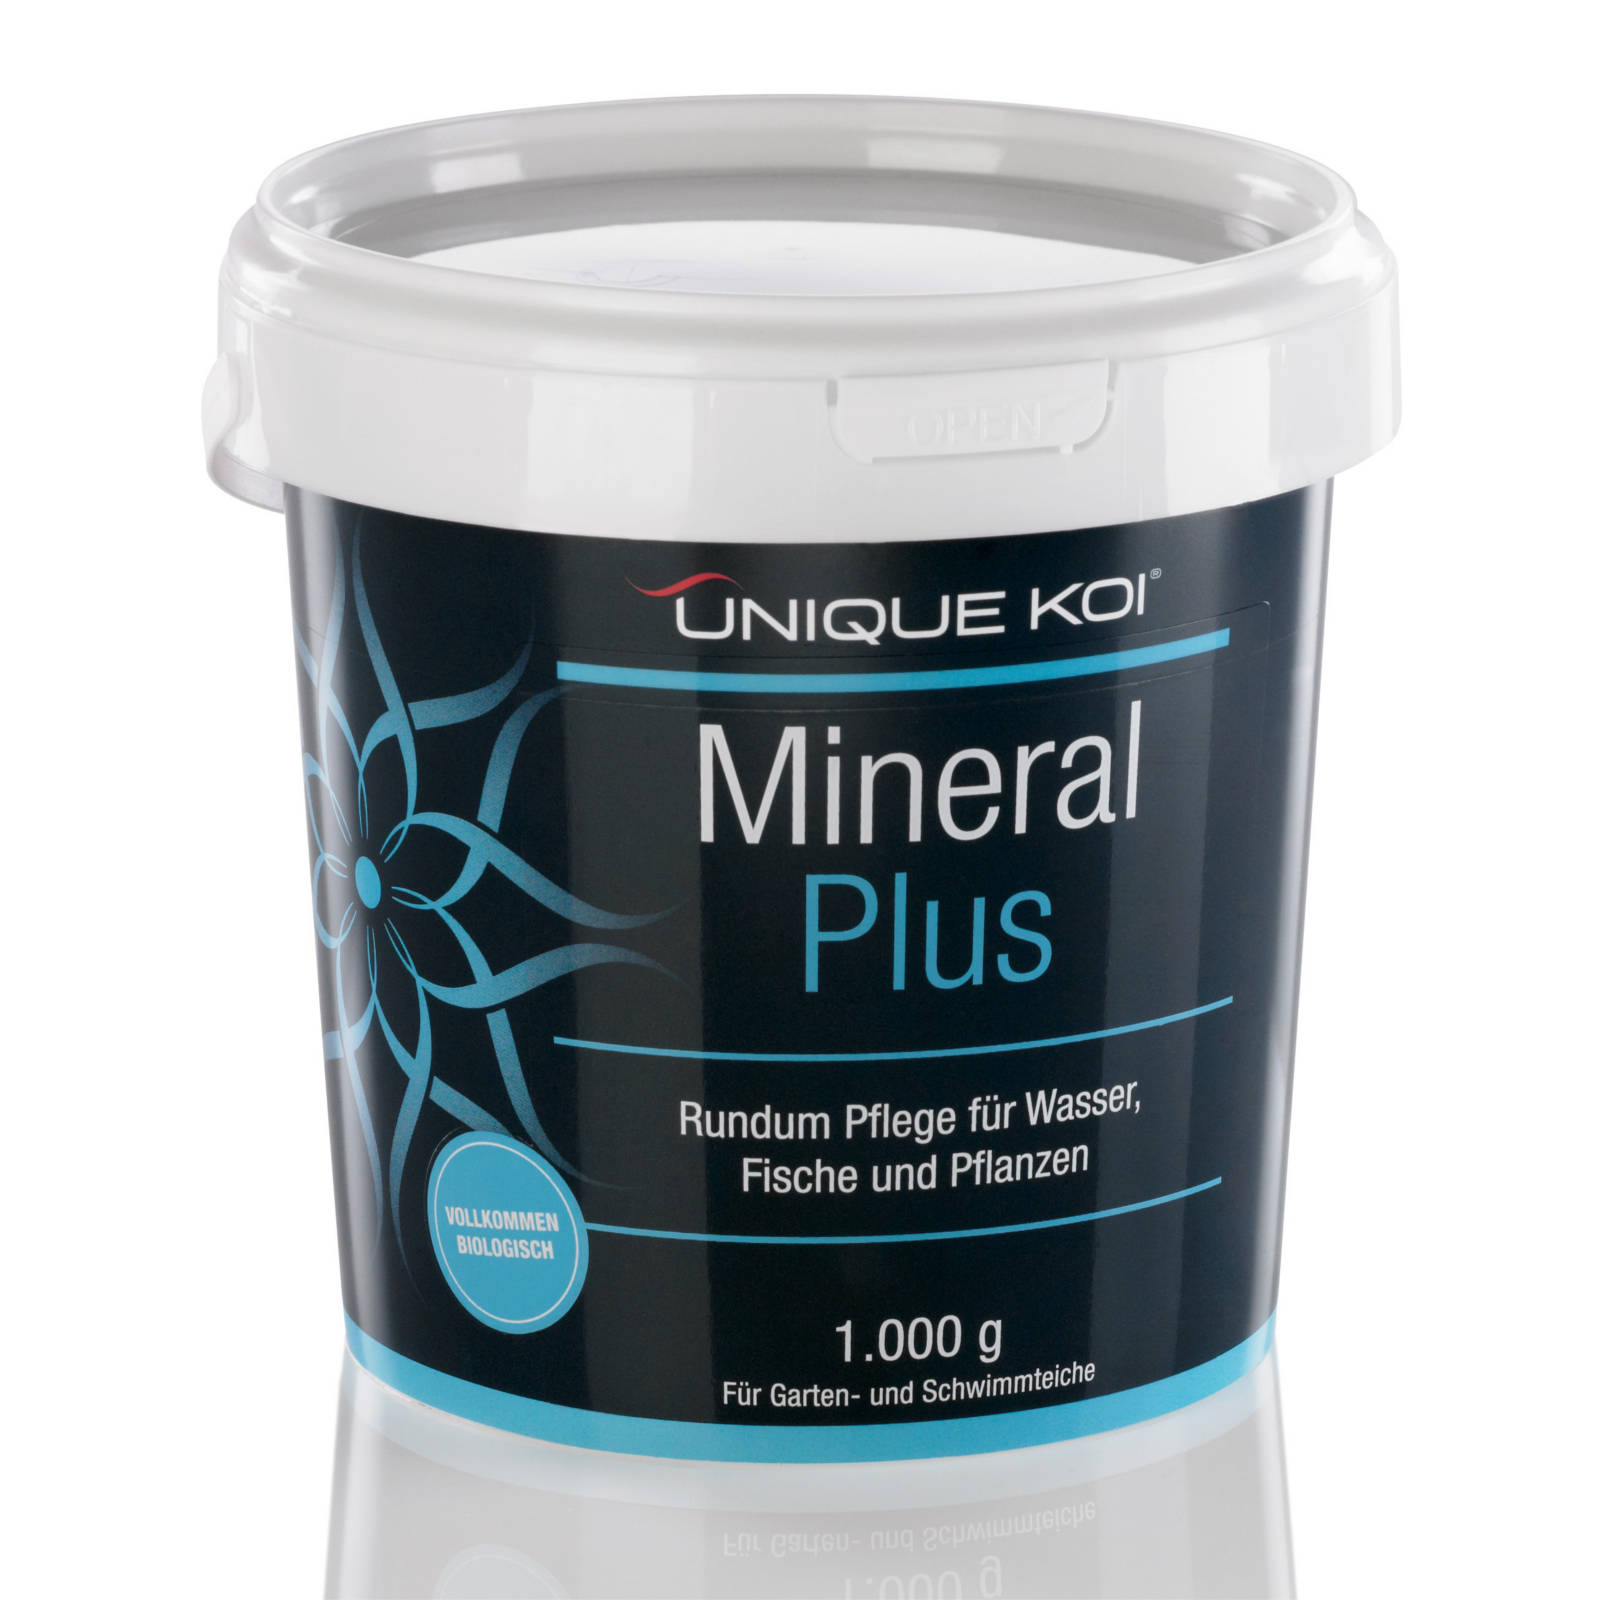 Unique Koi Mineral Plus Rundum Pflege für Wasser, Fische und Pflanzen 3000g